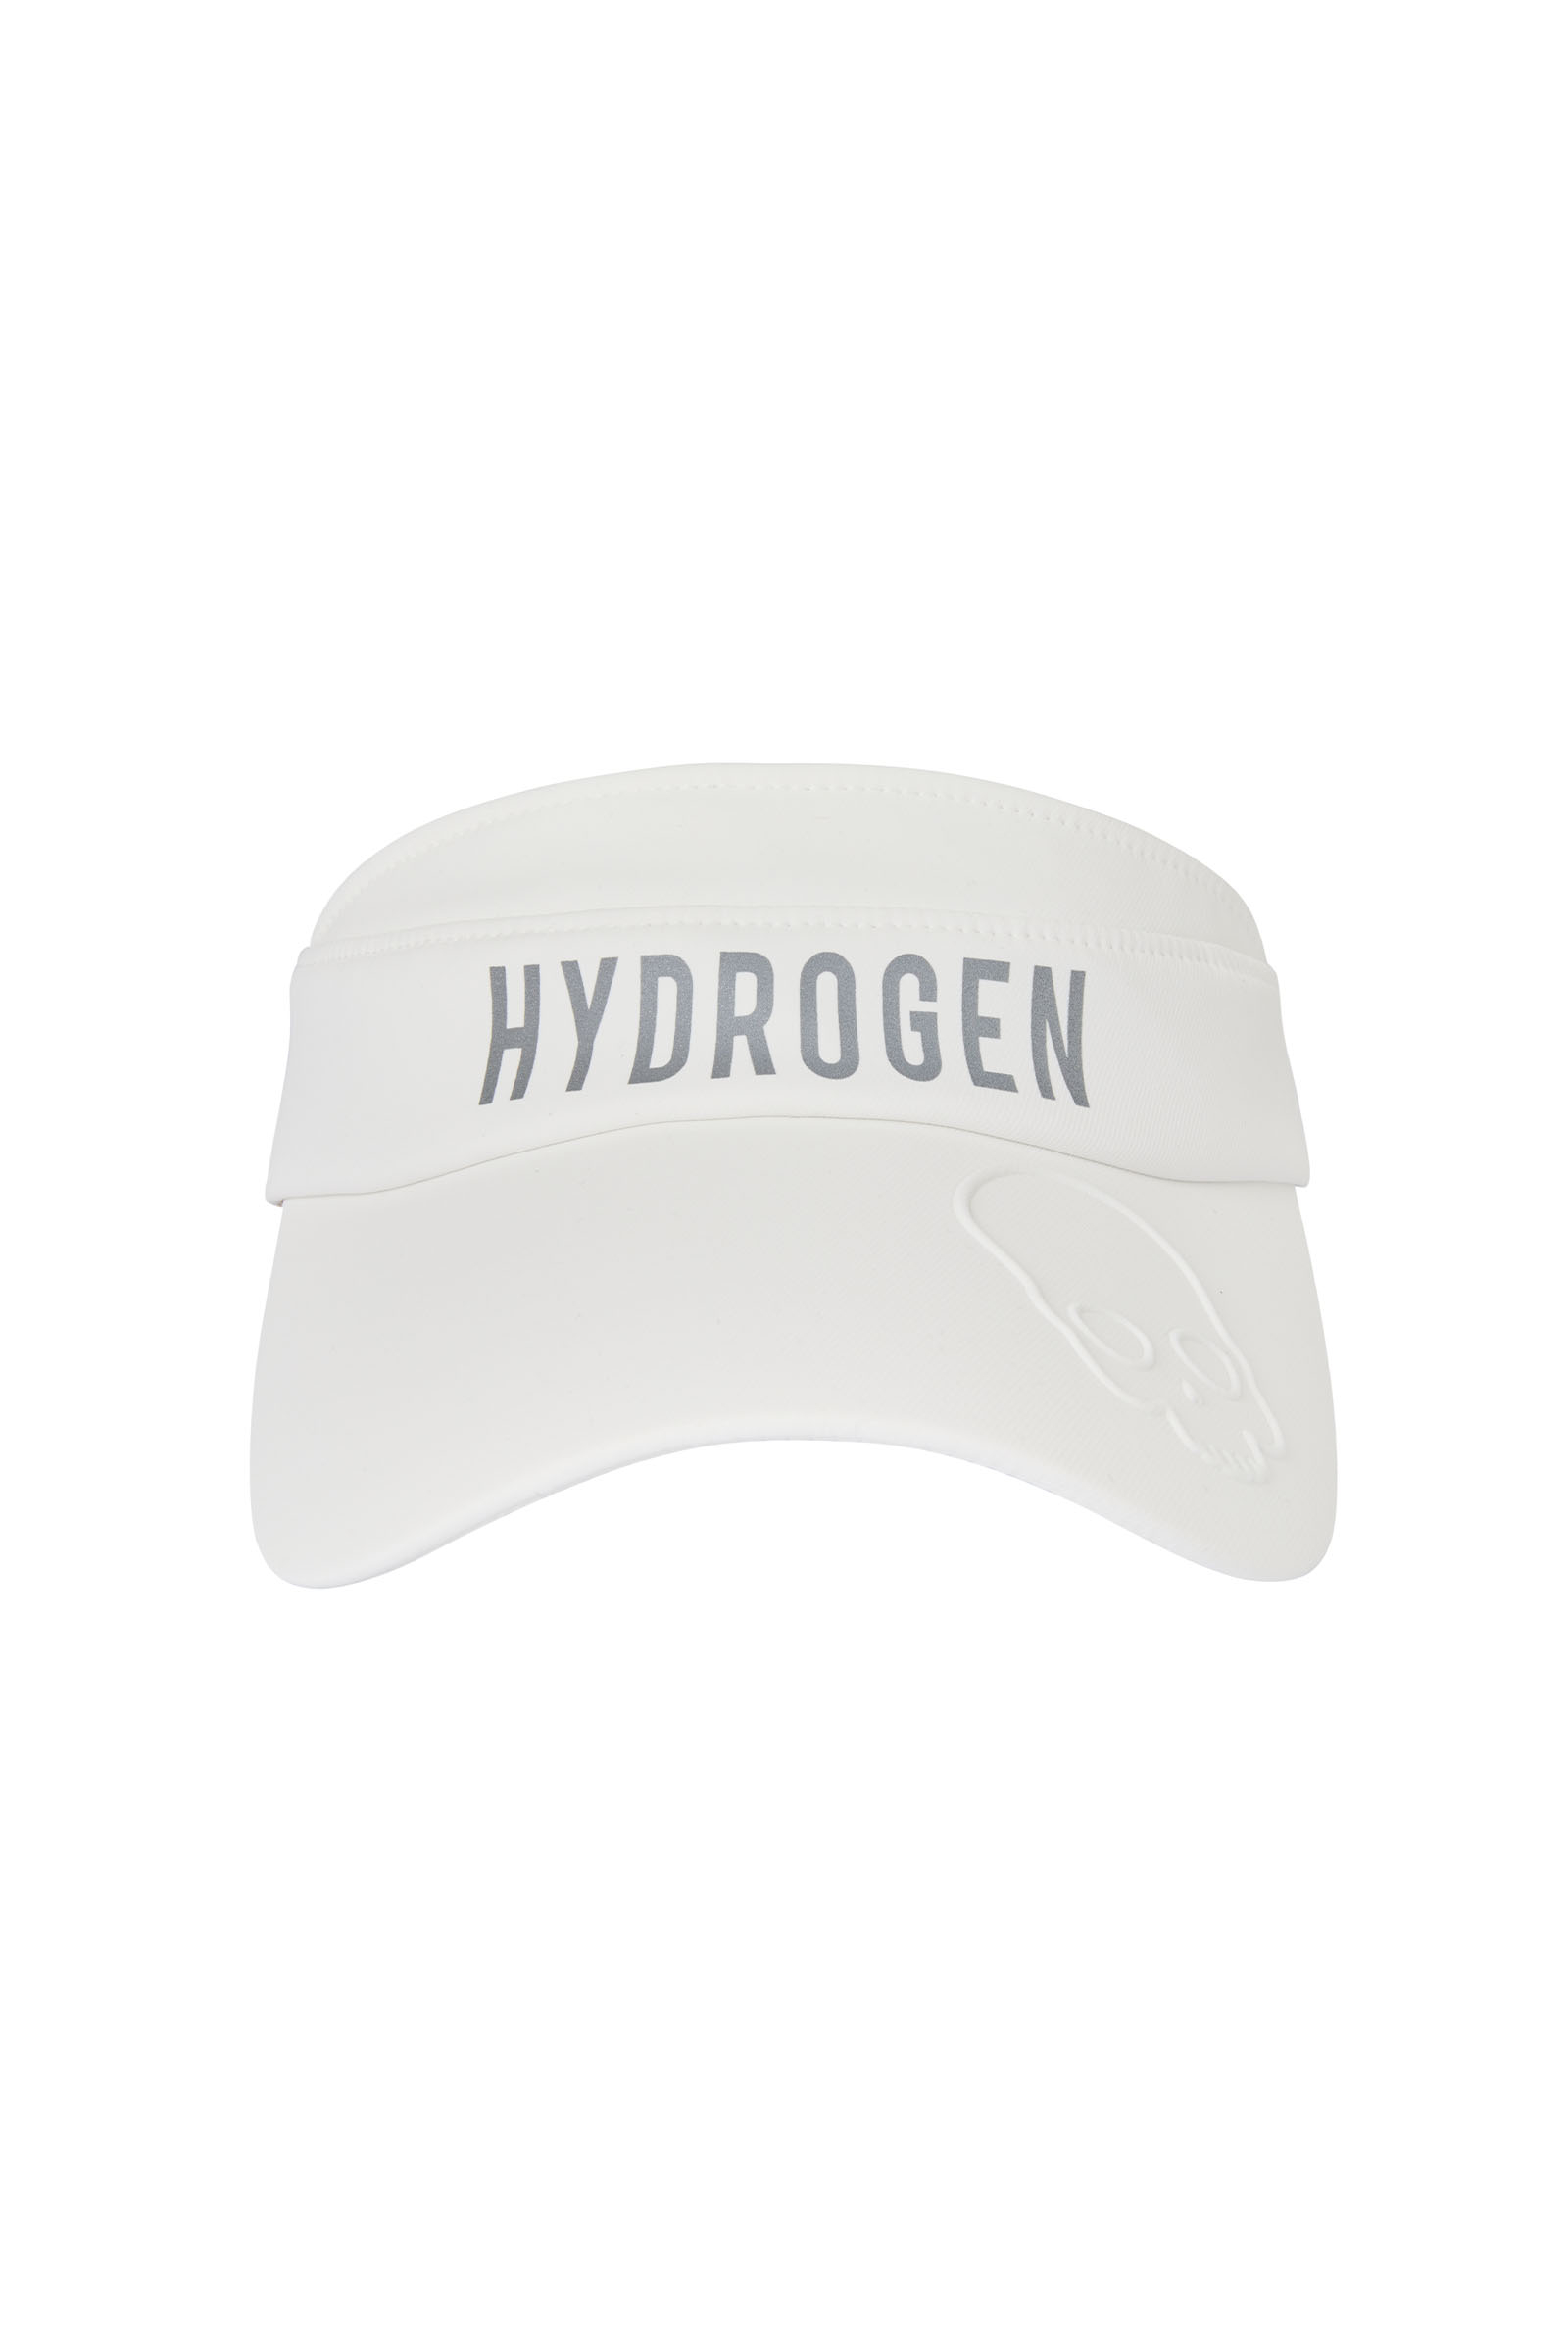 VISIERA DONNA - WHITE - Abbigliamento sportivo | Hydrogen